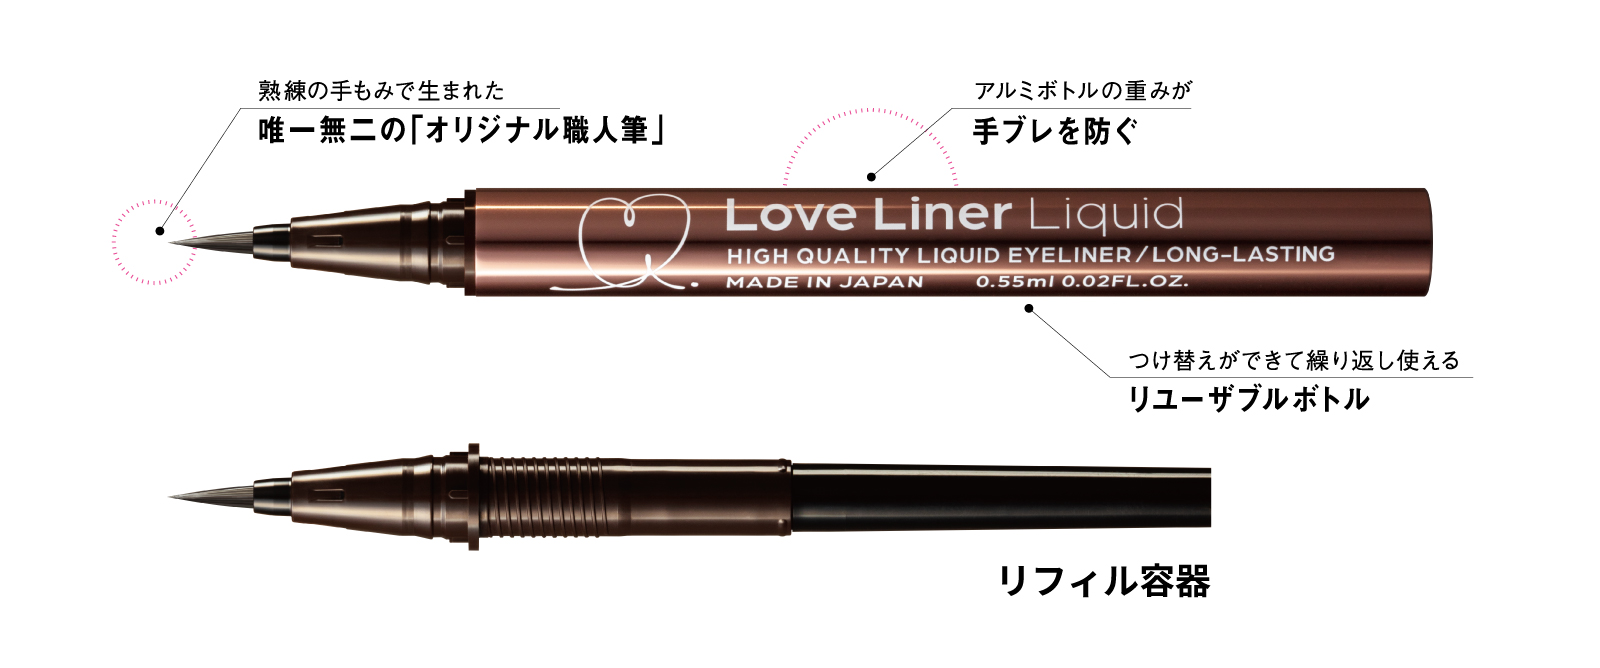 リキッドアイライナー Love Liner(ラブ・ライナー) オフィシャルサイト